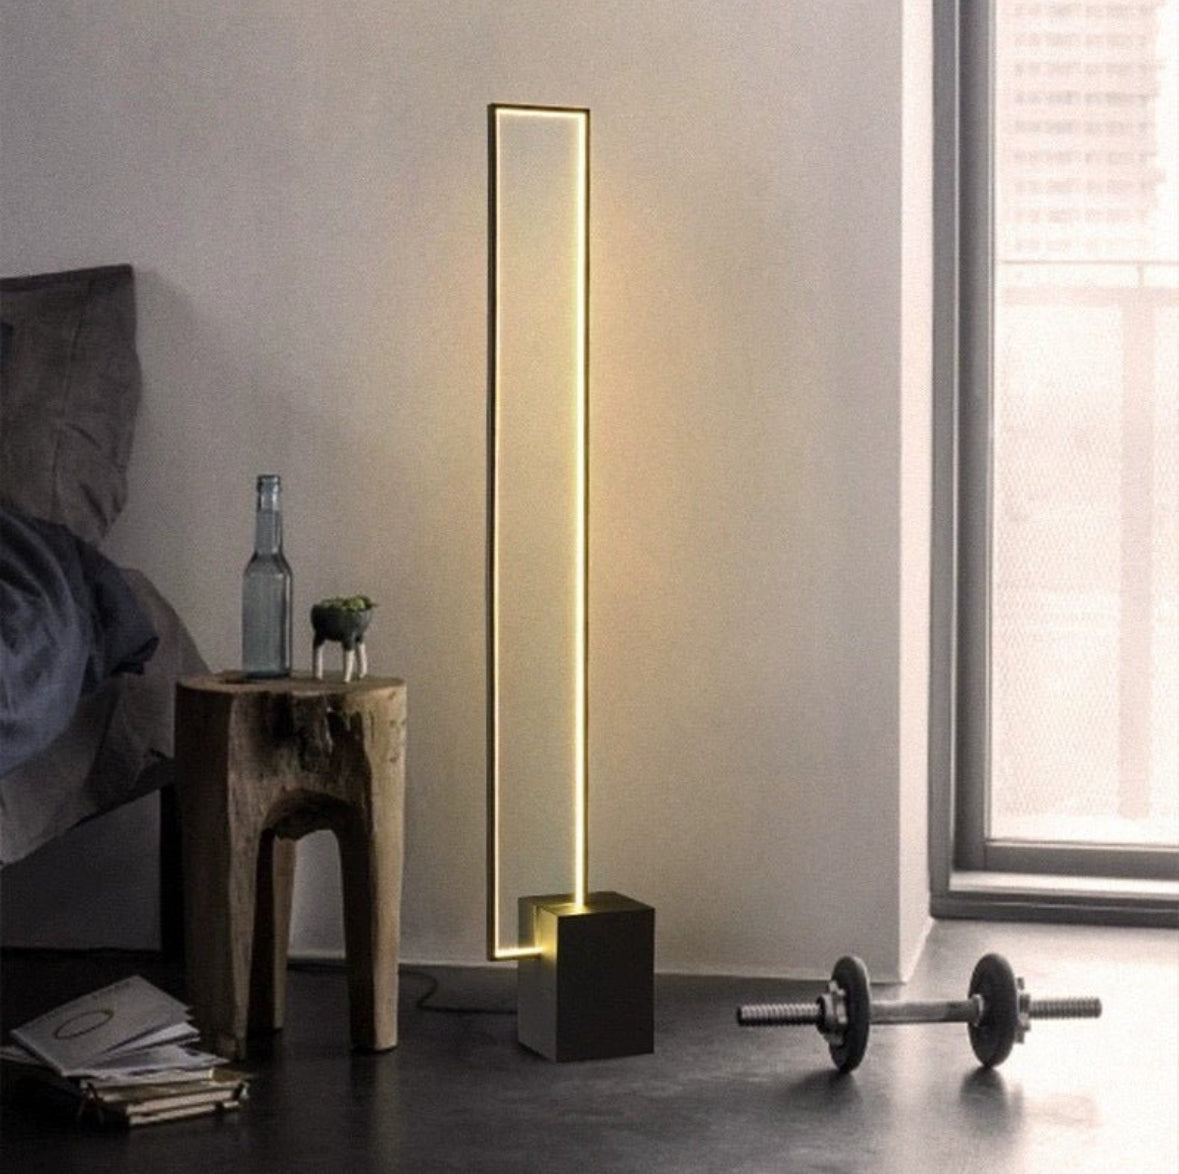 Liner rectangular LED floor lamp